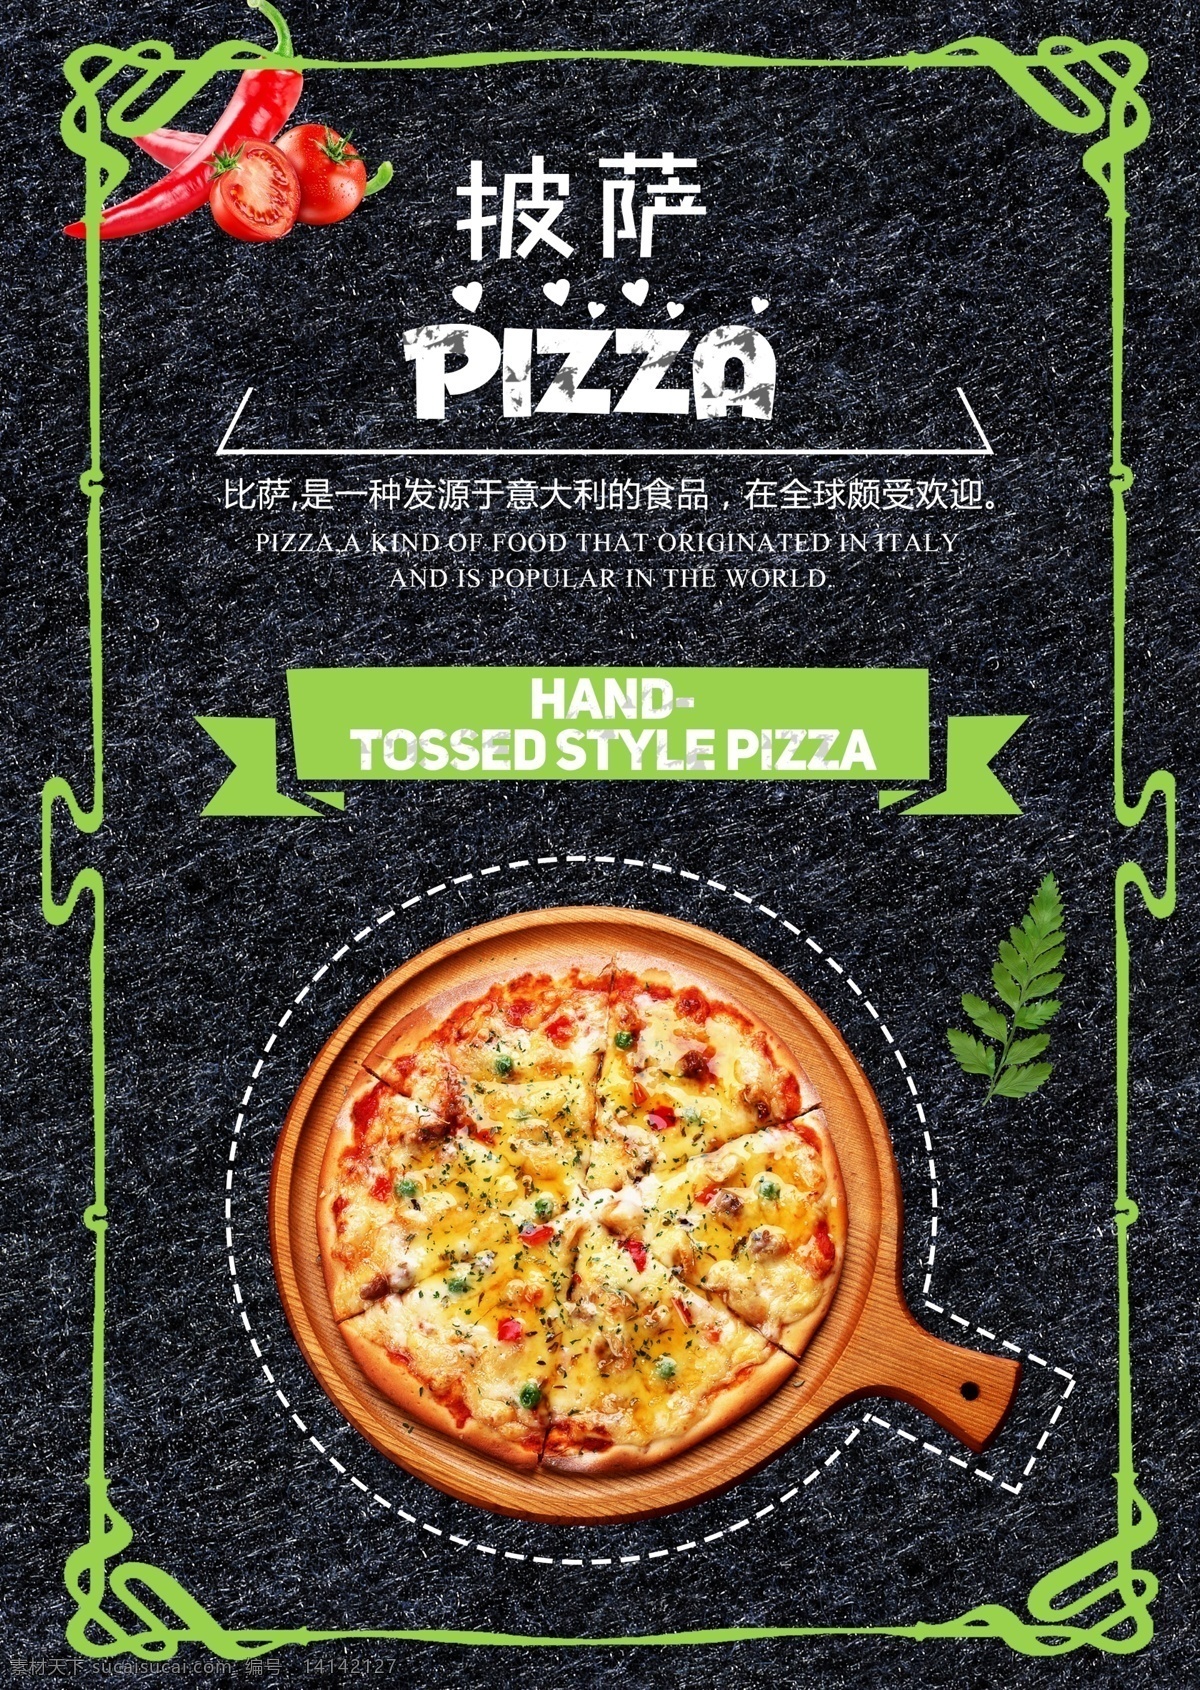 披萨比萨 比萨 意大利披萨 pizza 披萨 美味 中国披萨 披萨做法 西餐厨师 美食 小吃 披萨海报 披萨展板 披萨文化 披萨促销 披萨西餐 披萨快餐 披萨加盟 披萨店 披萨必胜店 比萨披萨 披萨包装 披萨美食 西式披萨 披萨厨师 披萨漫画 披萨插画 披萨广告 披萨创意海报 海报